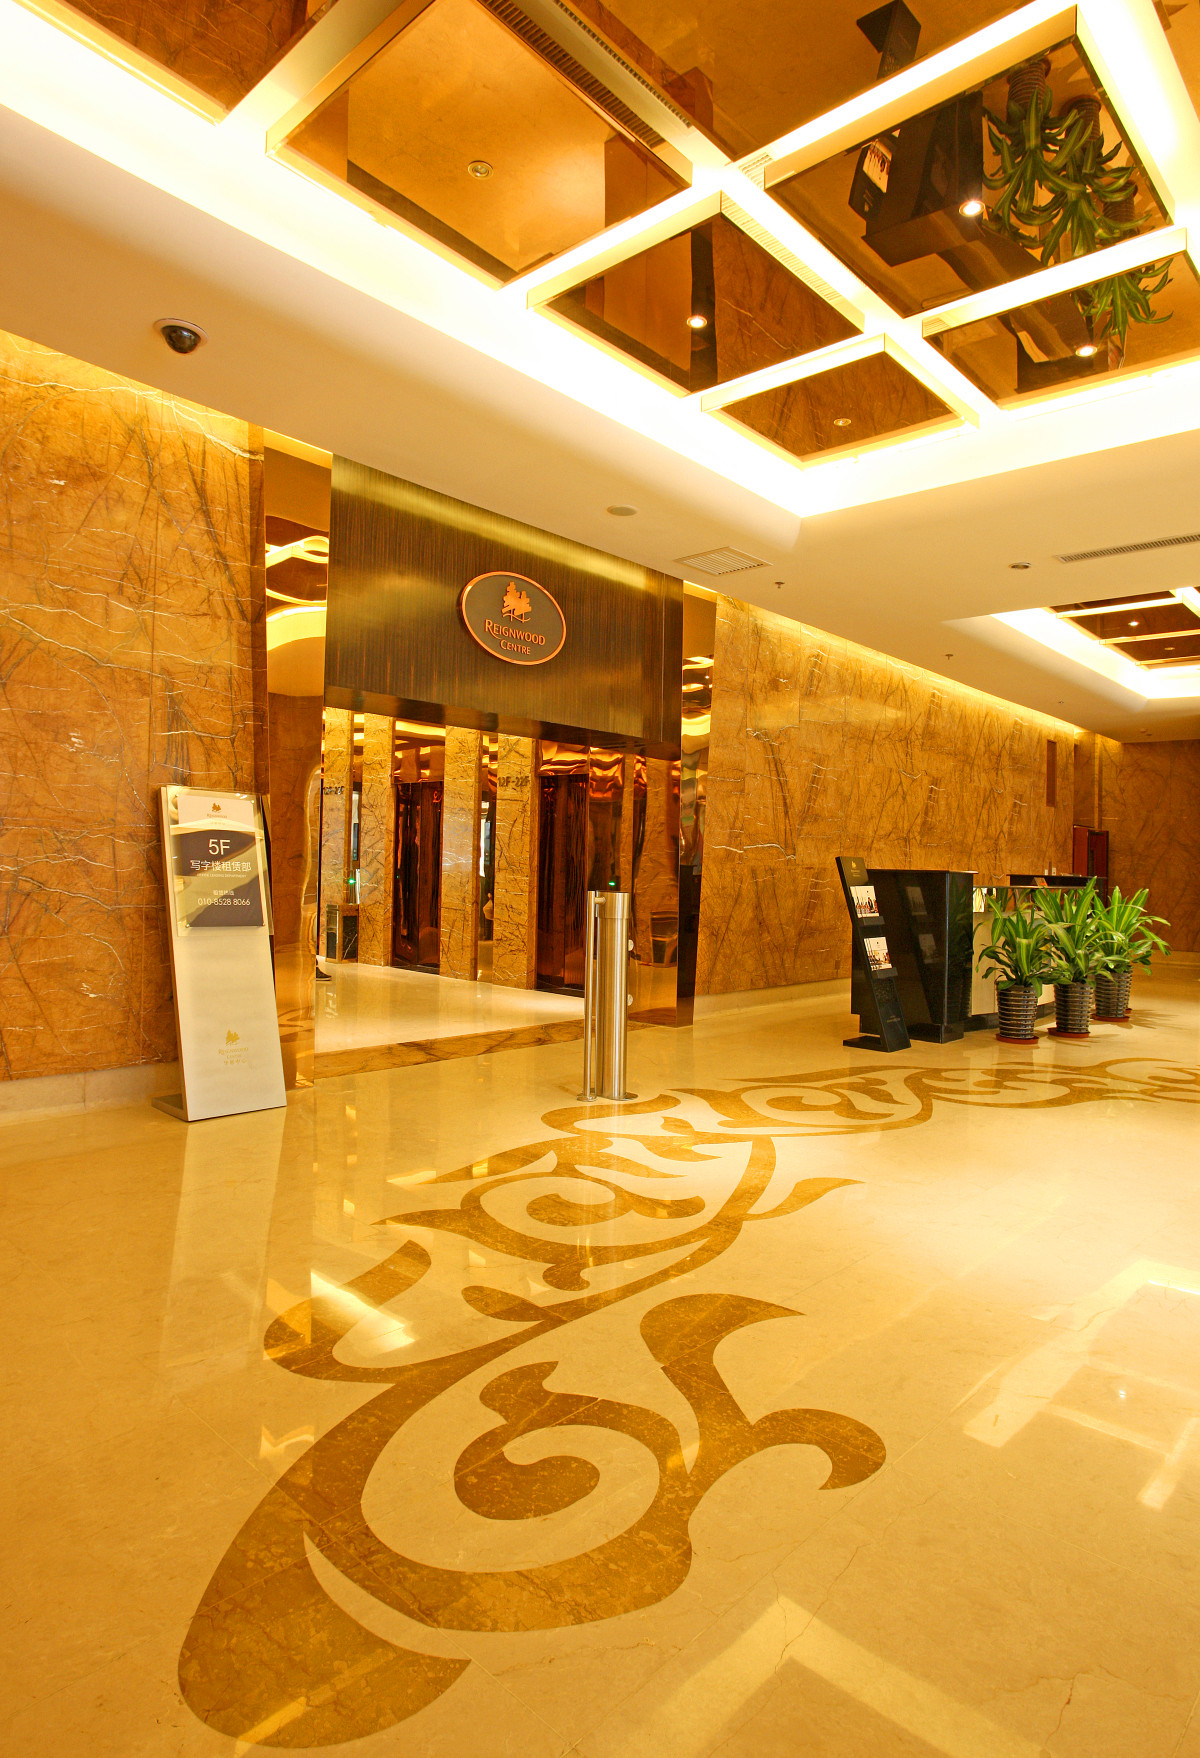 Fairmont hotel,Beijing